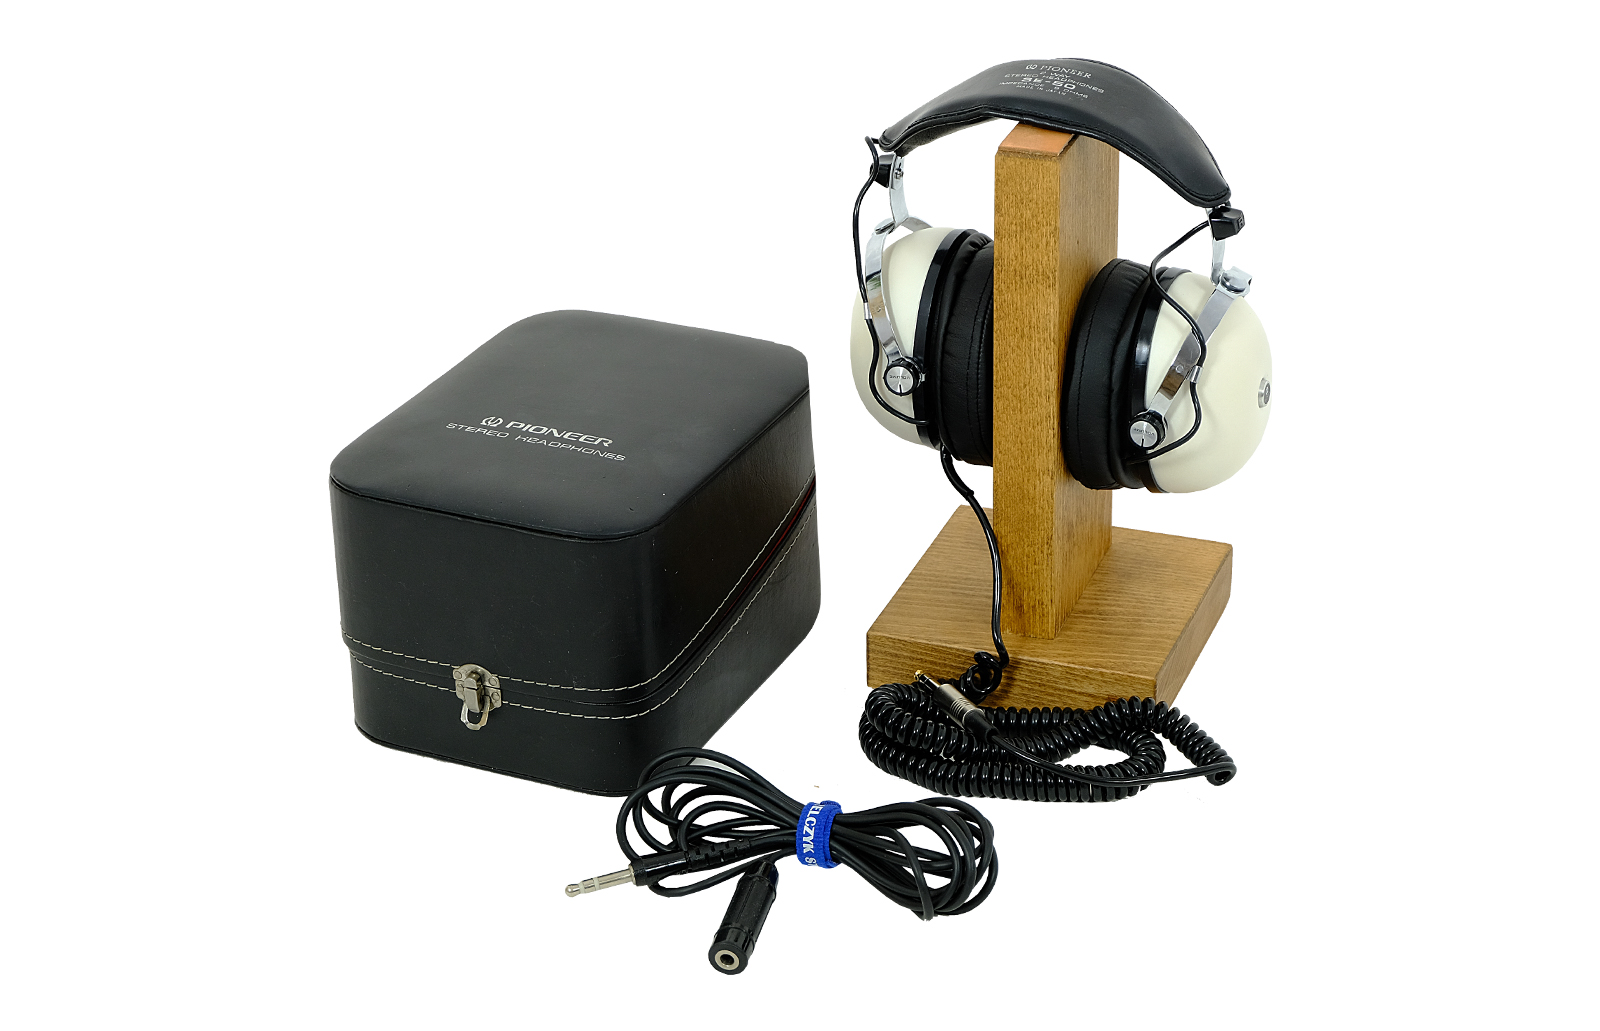 Pioneer SE-50 headphones